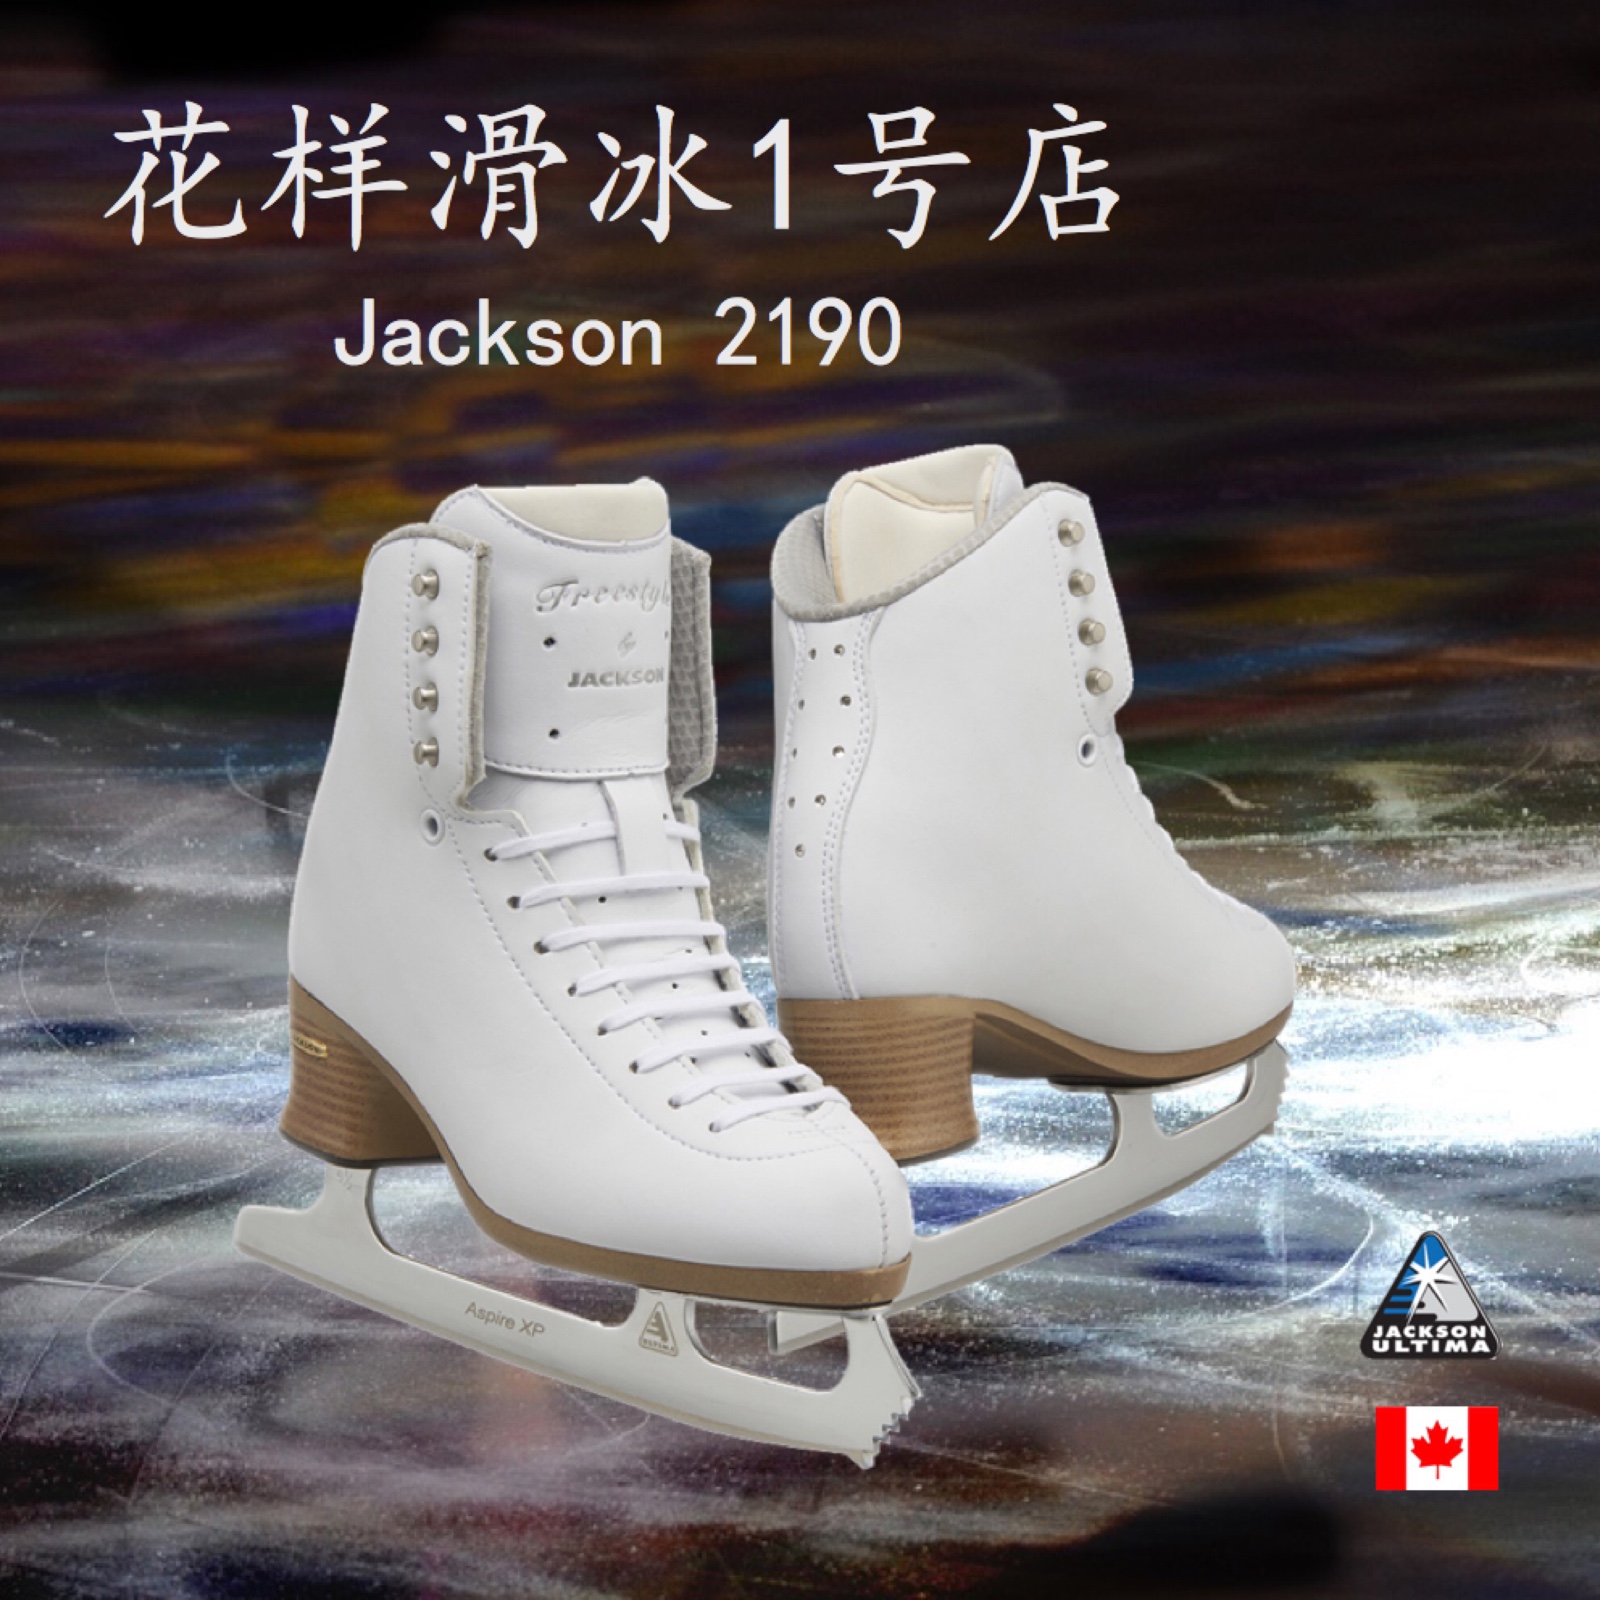 【花样滑冰1号店】 加拿大 Jackson 冰刀鞋JS219+Aspire XP冰刀